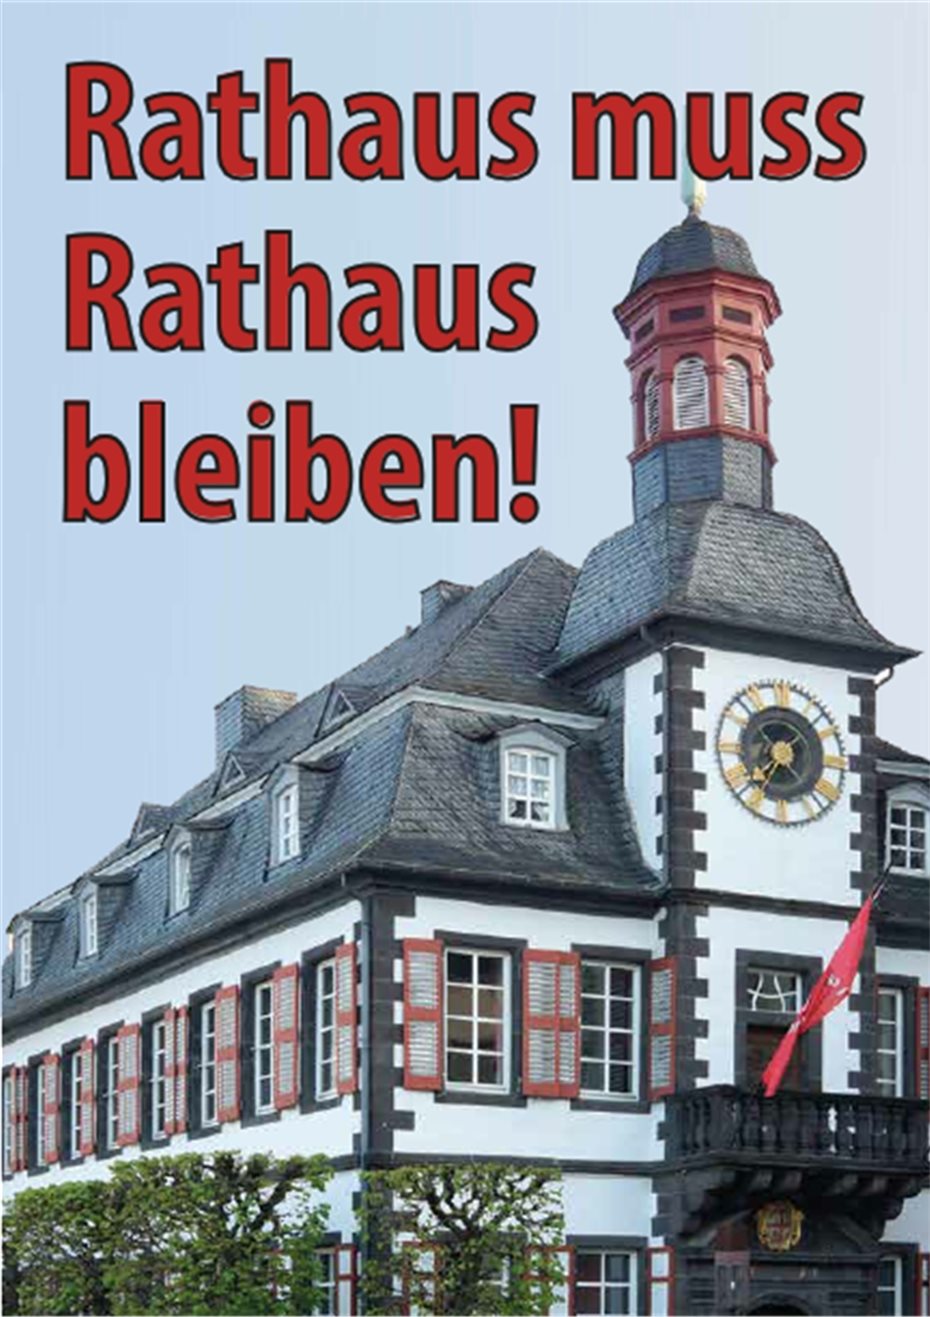 Aktionskreis Altes Rathaus
startet Bürgerbegehren